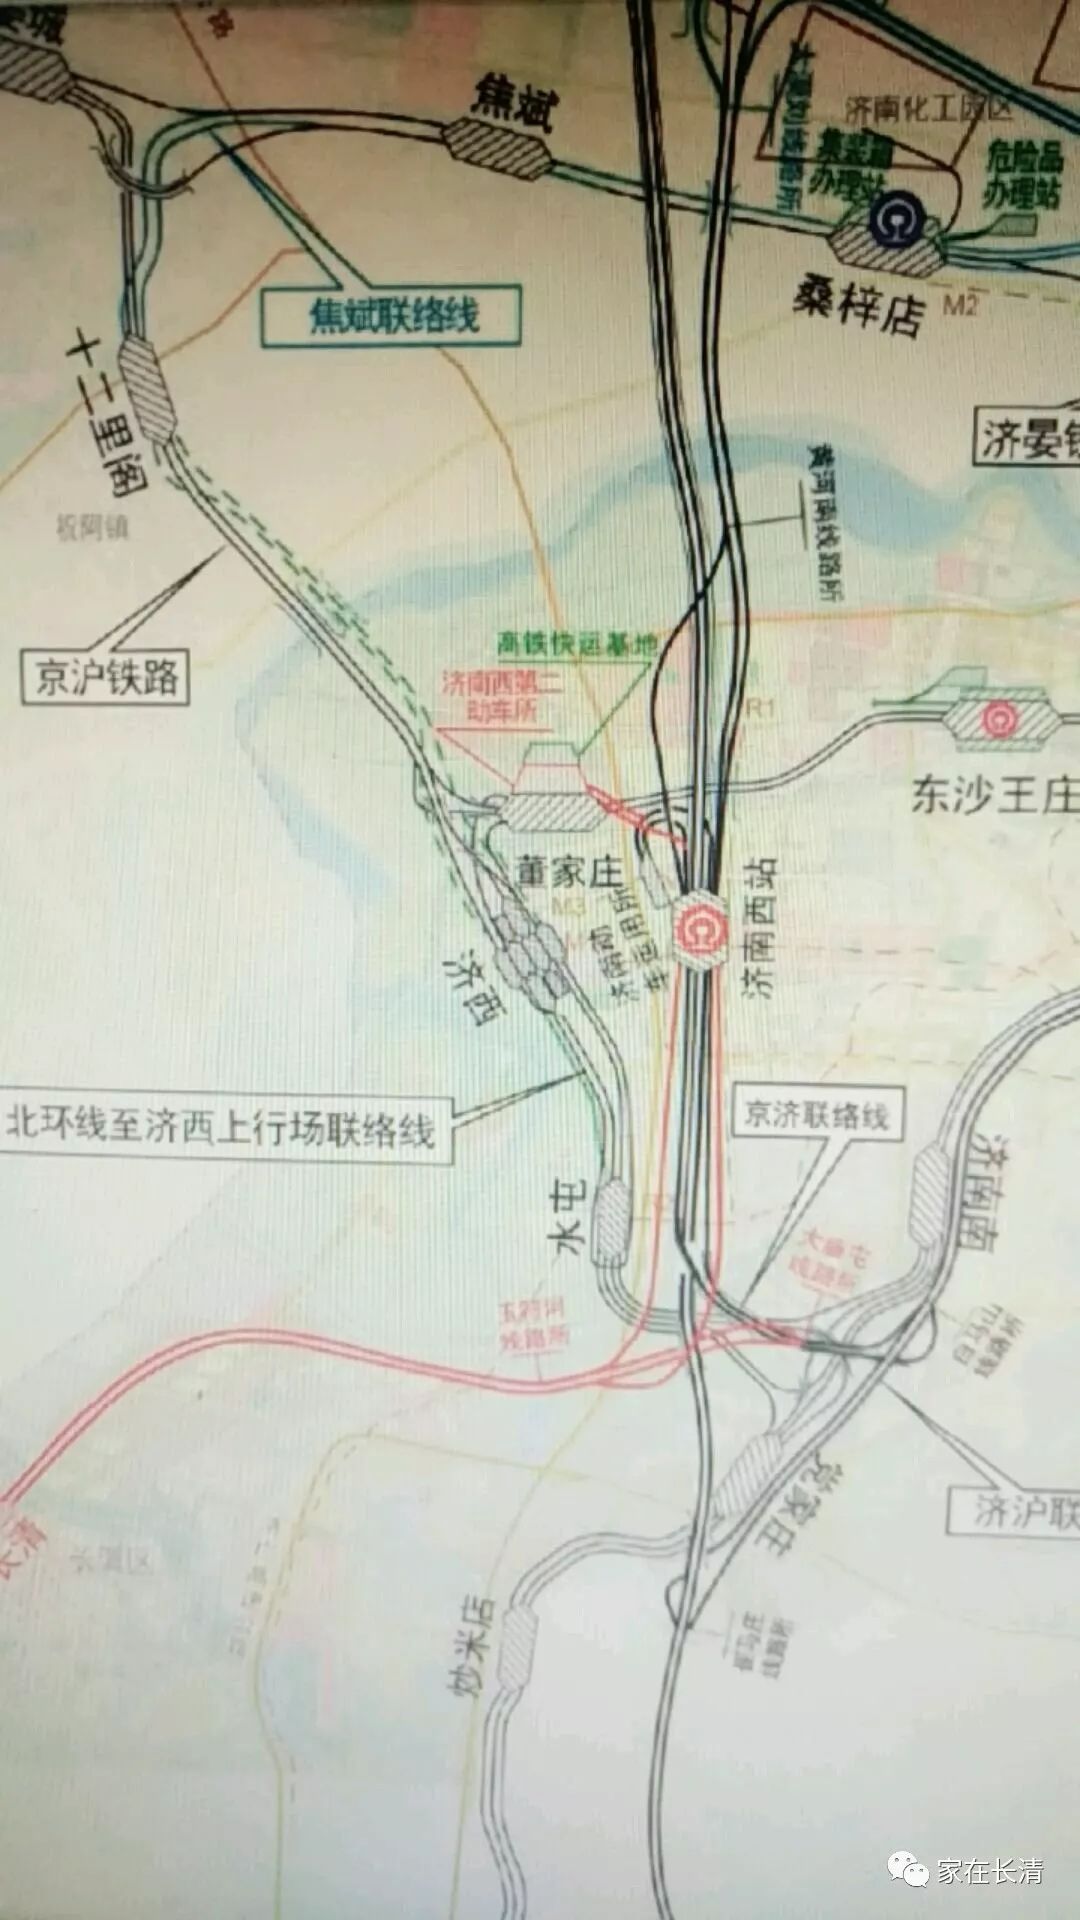 日前,有网友爆出郑济高铁线路工程的相关会议通知和线路图.